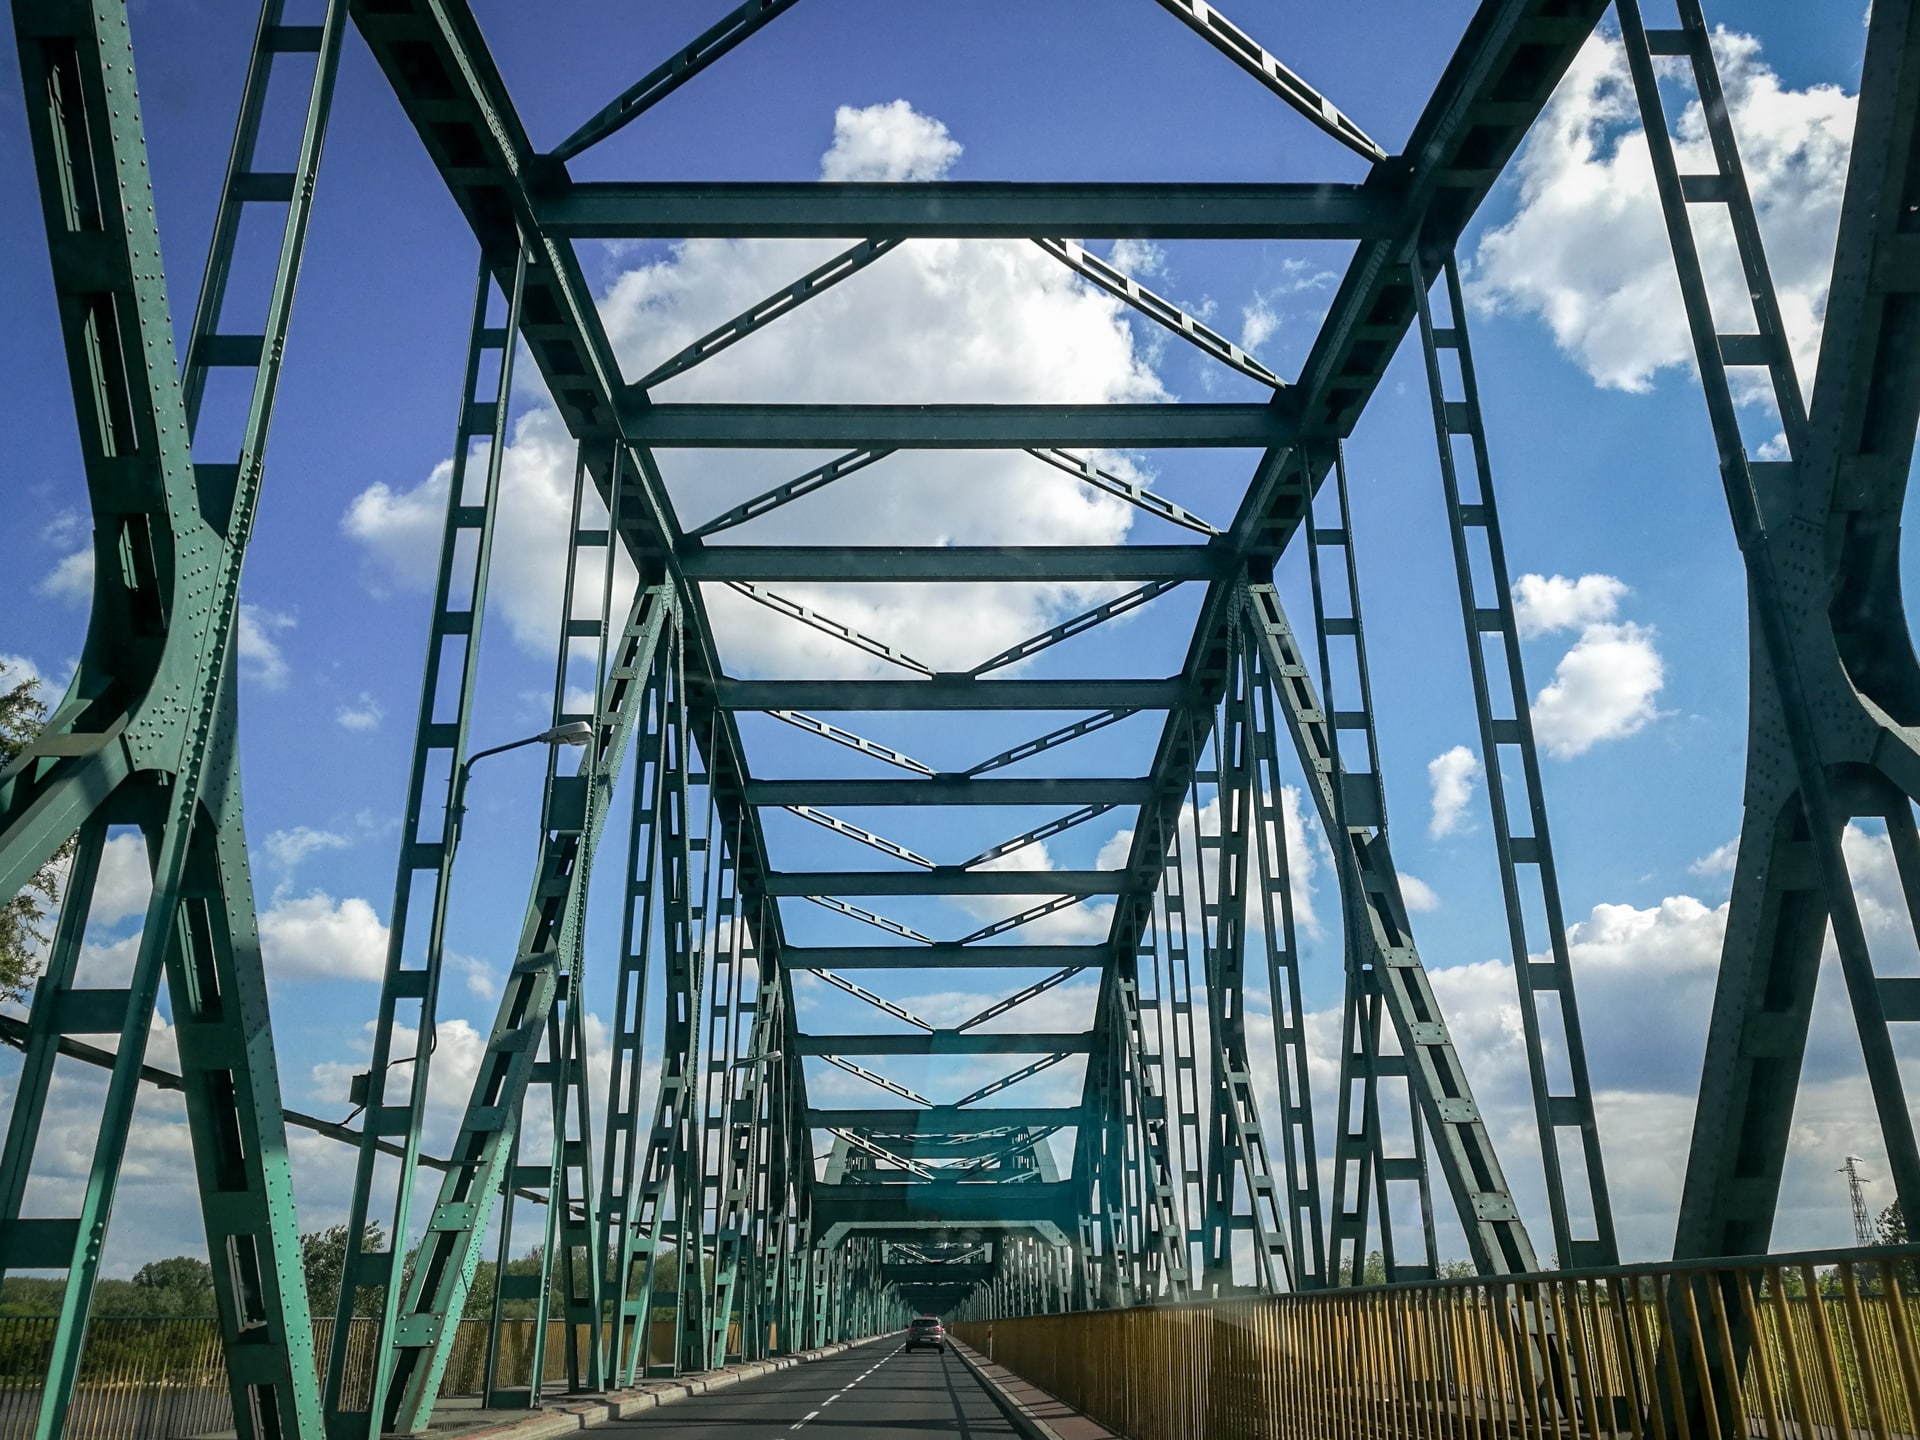 The Fordon Bridge